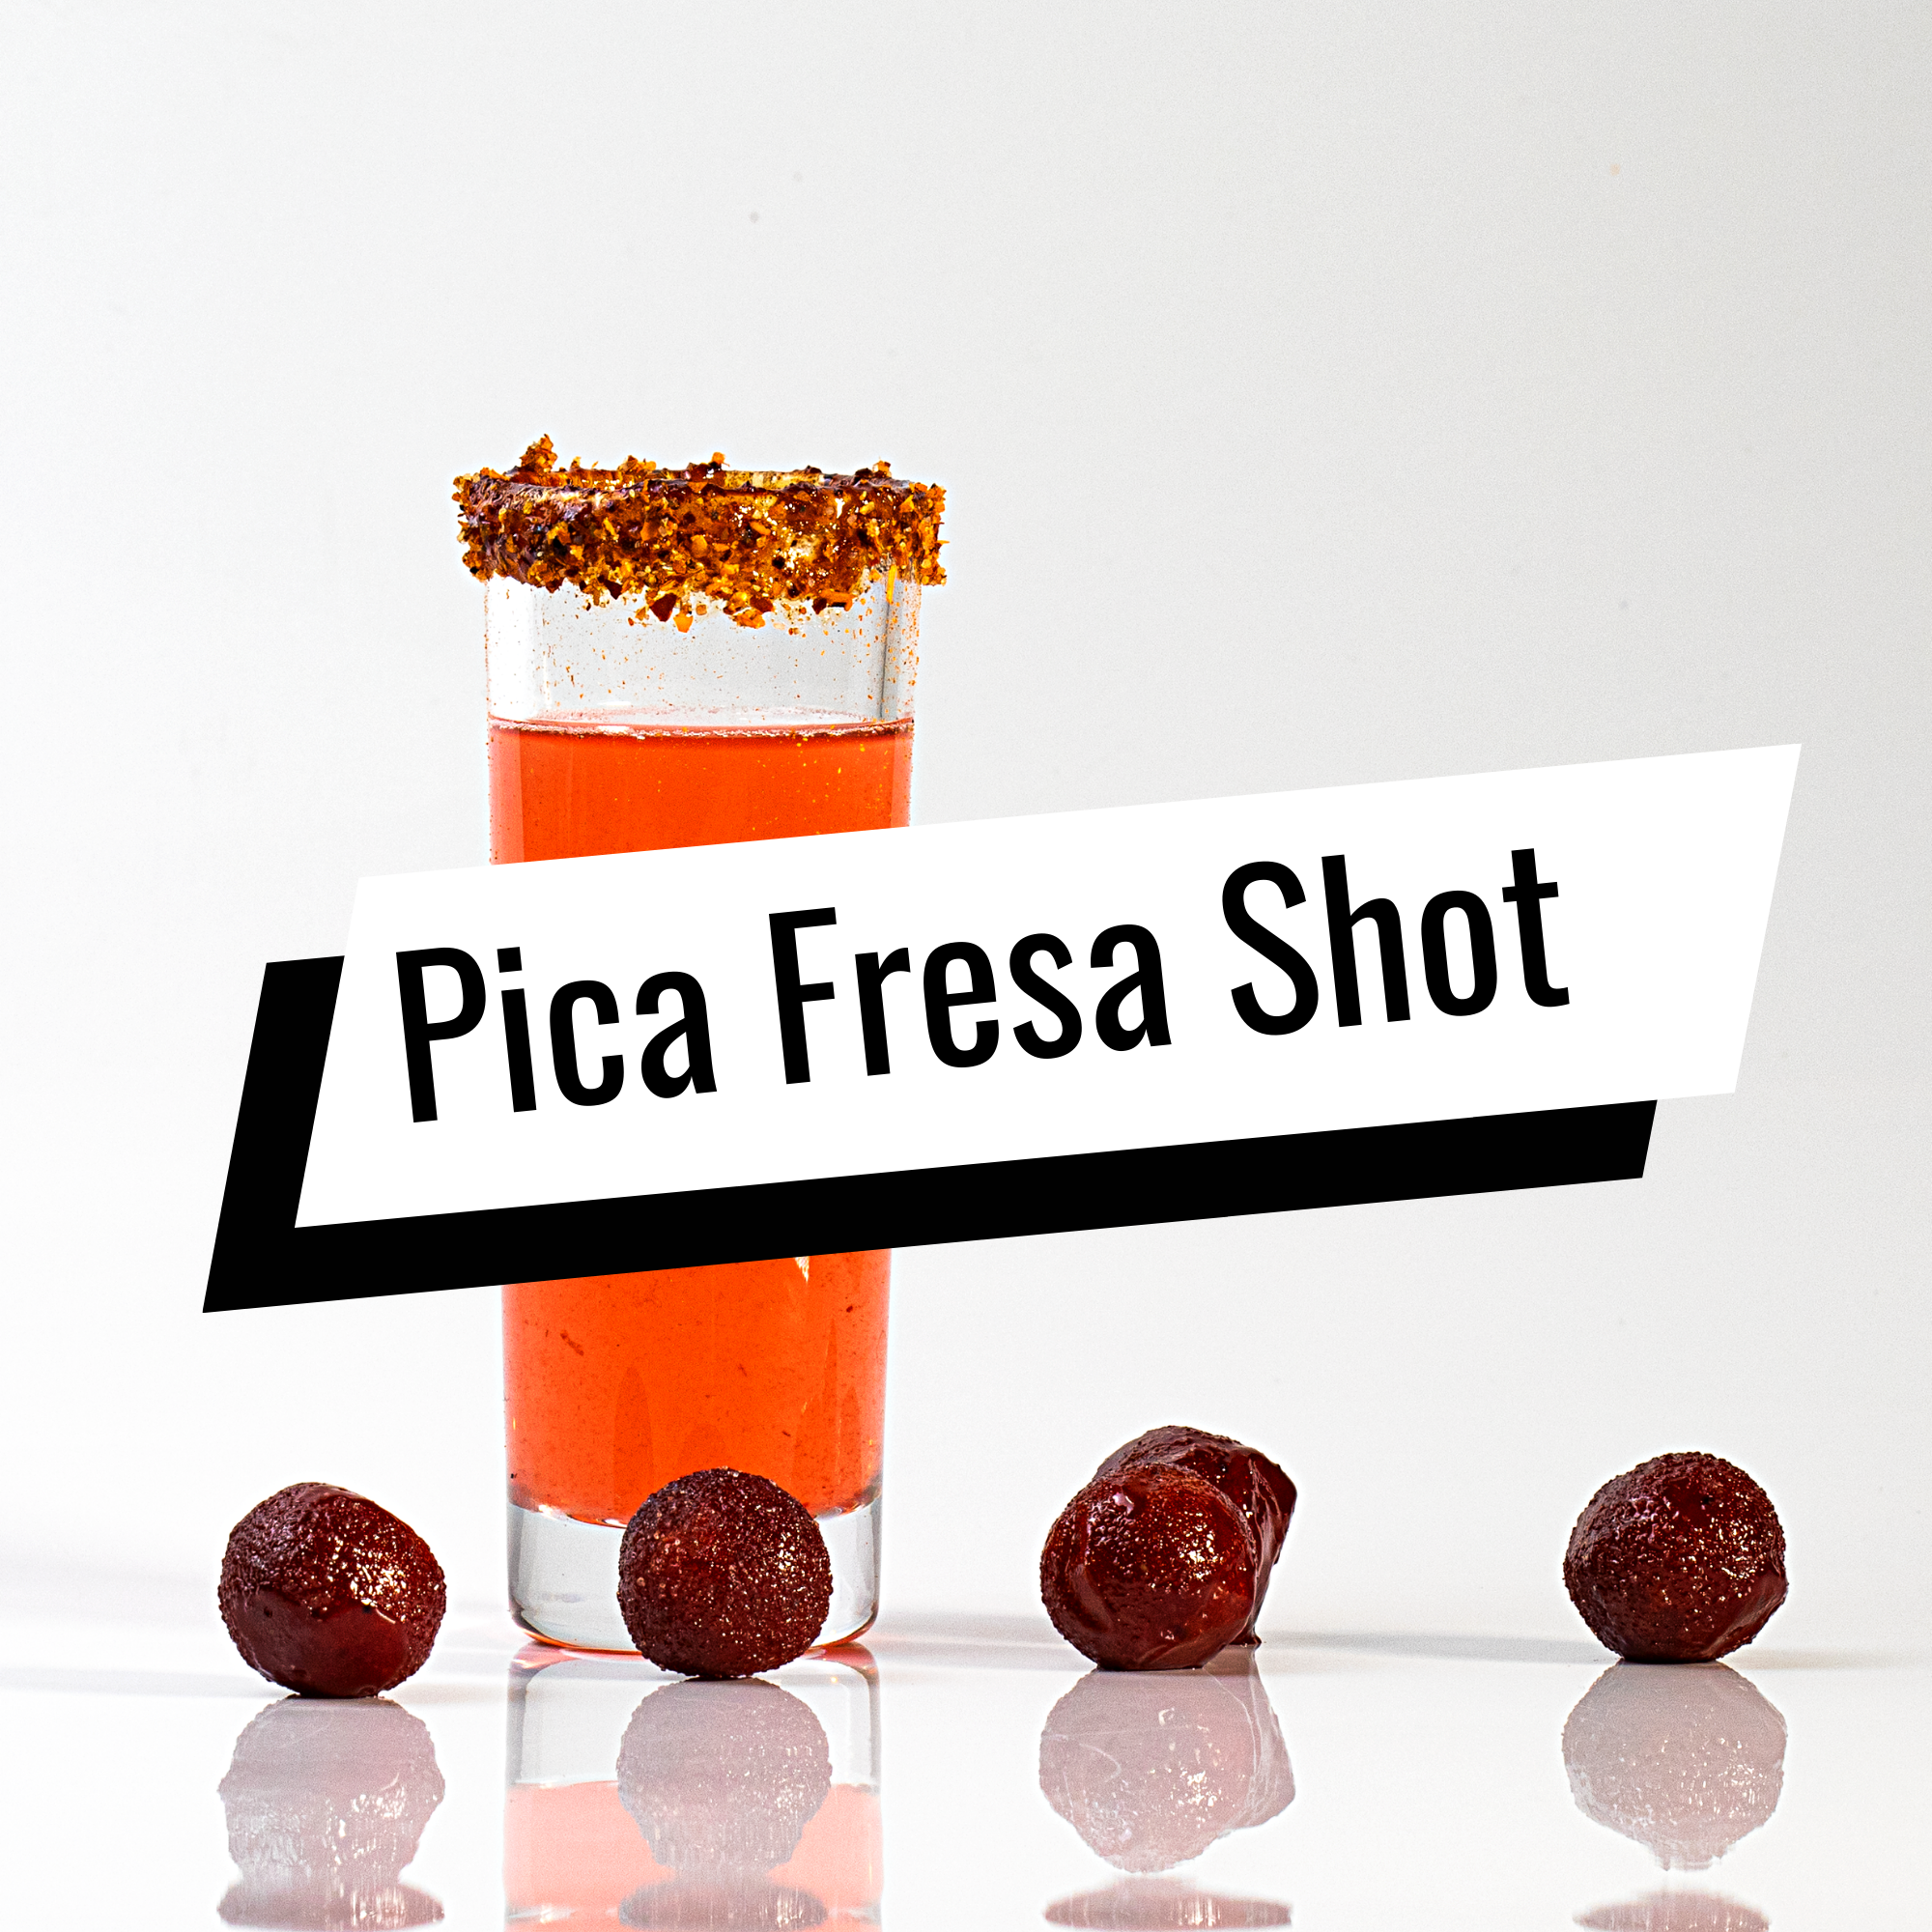 Pica Fresa Smirnoff Tamarind shot